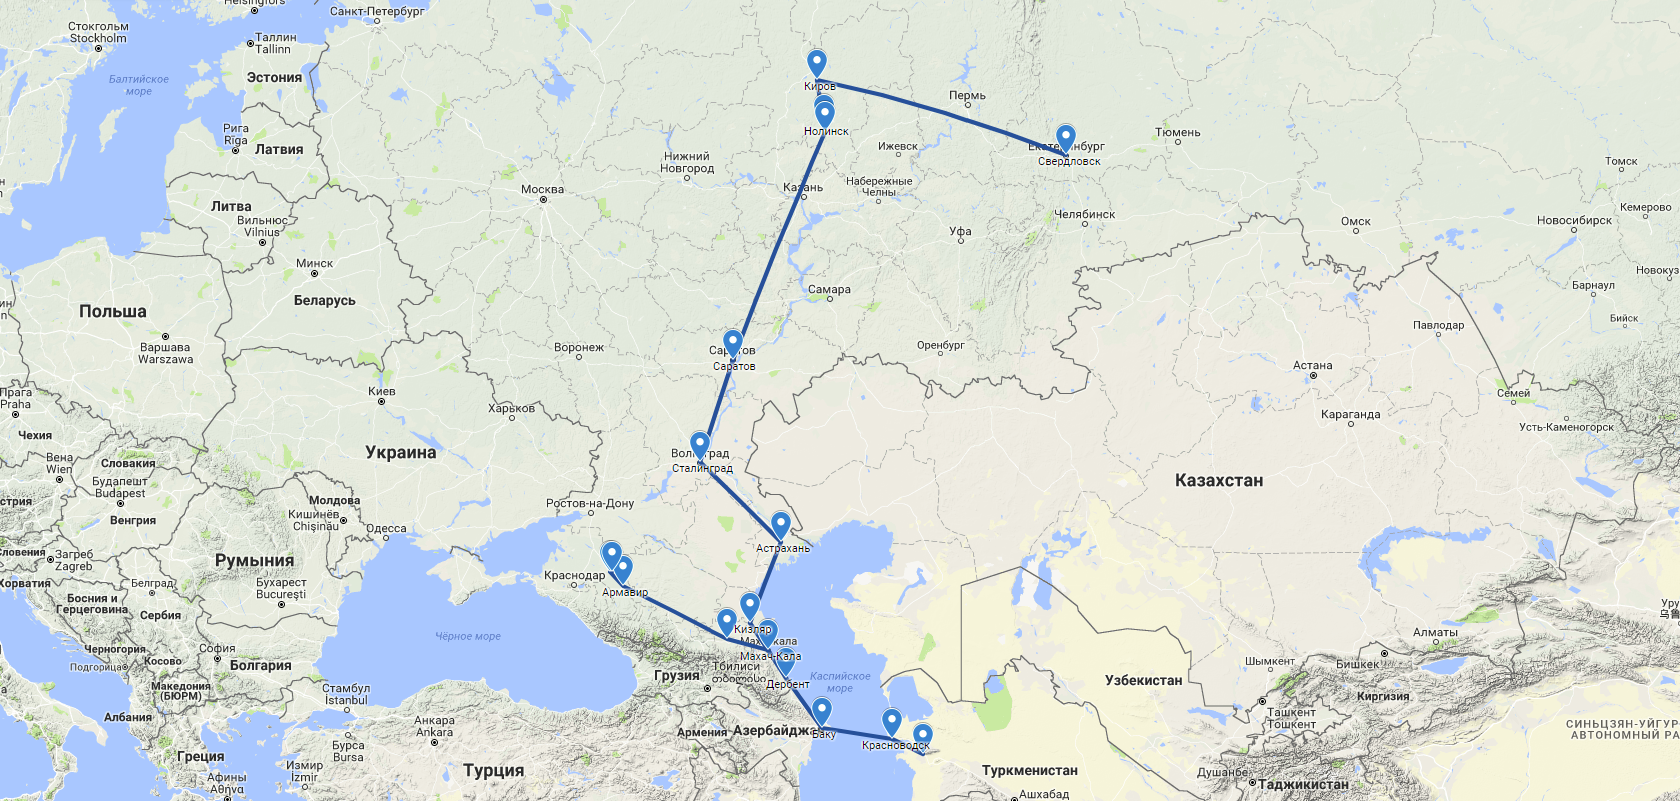 Маршрут путешествия, описанный в письме. Использованы картографические материалы Google Maps.